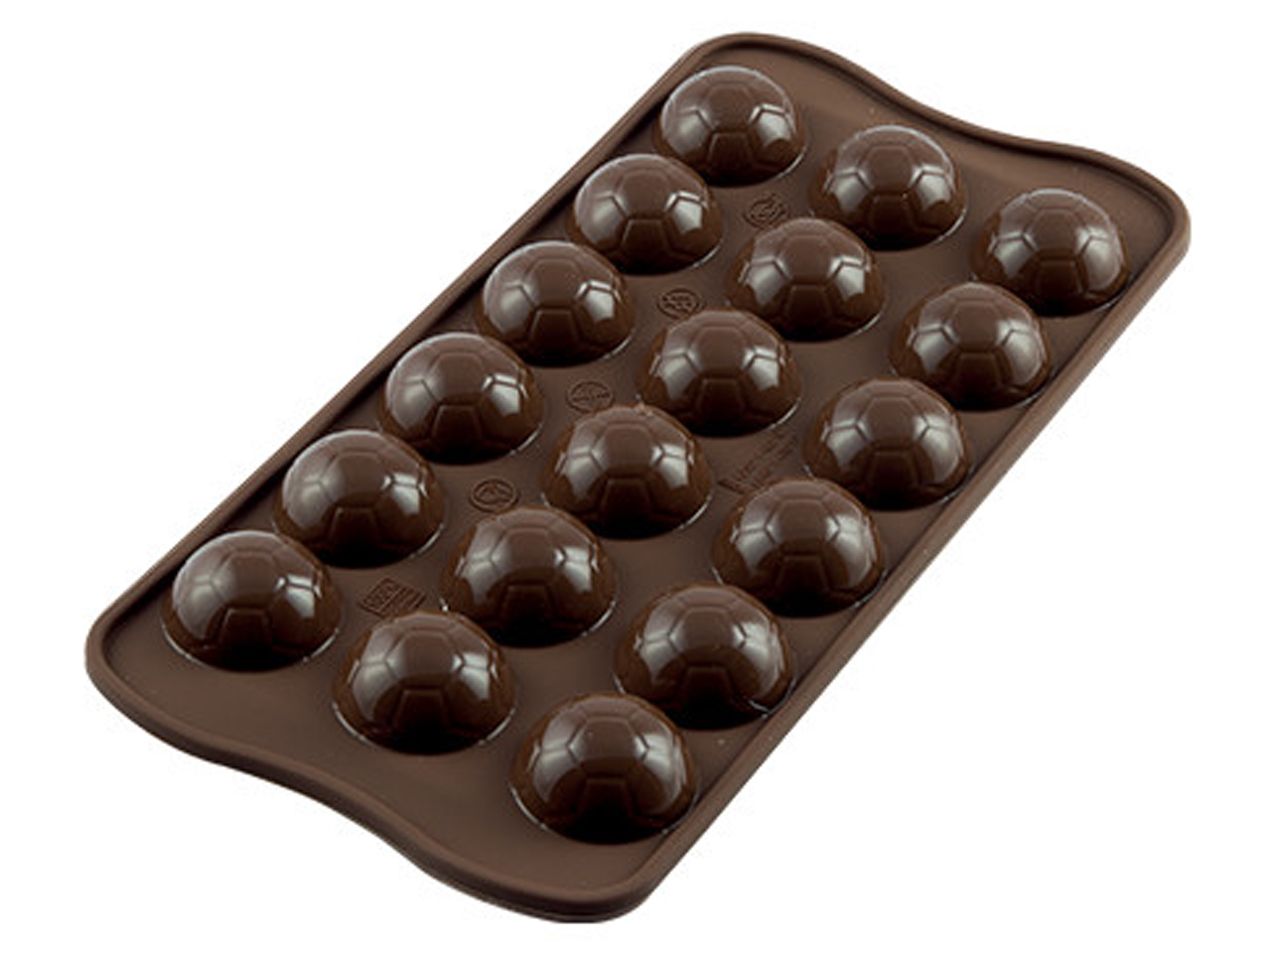 Moule pour chocolat - Choco Goal